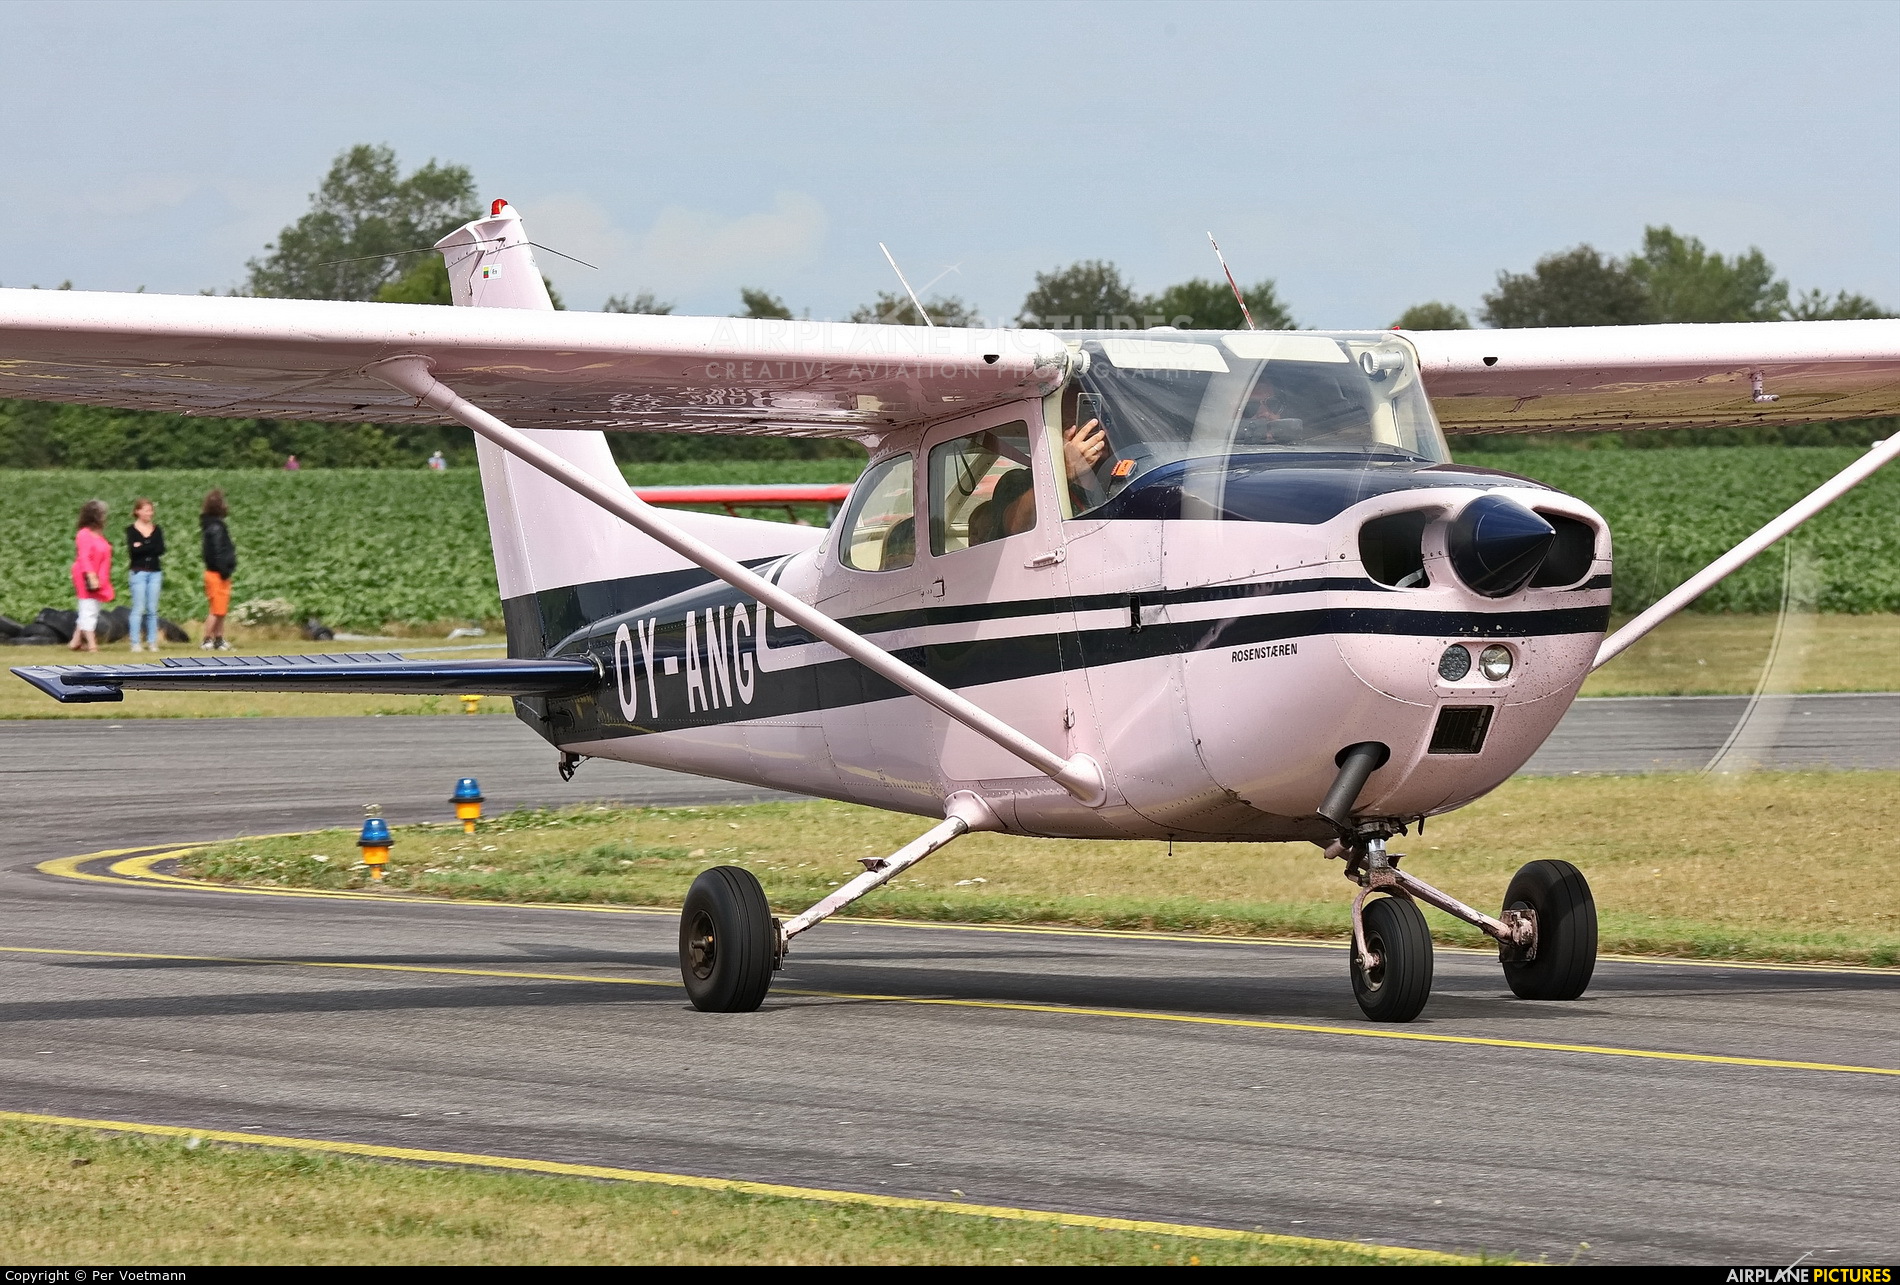 Starling Air OY-ANG aircraft at Lolland-Falster Airport